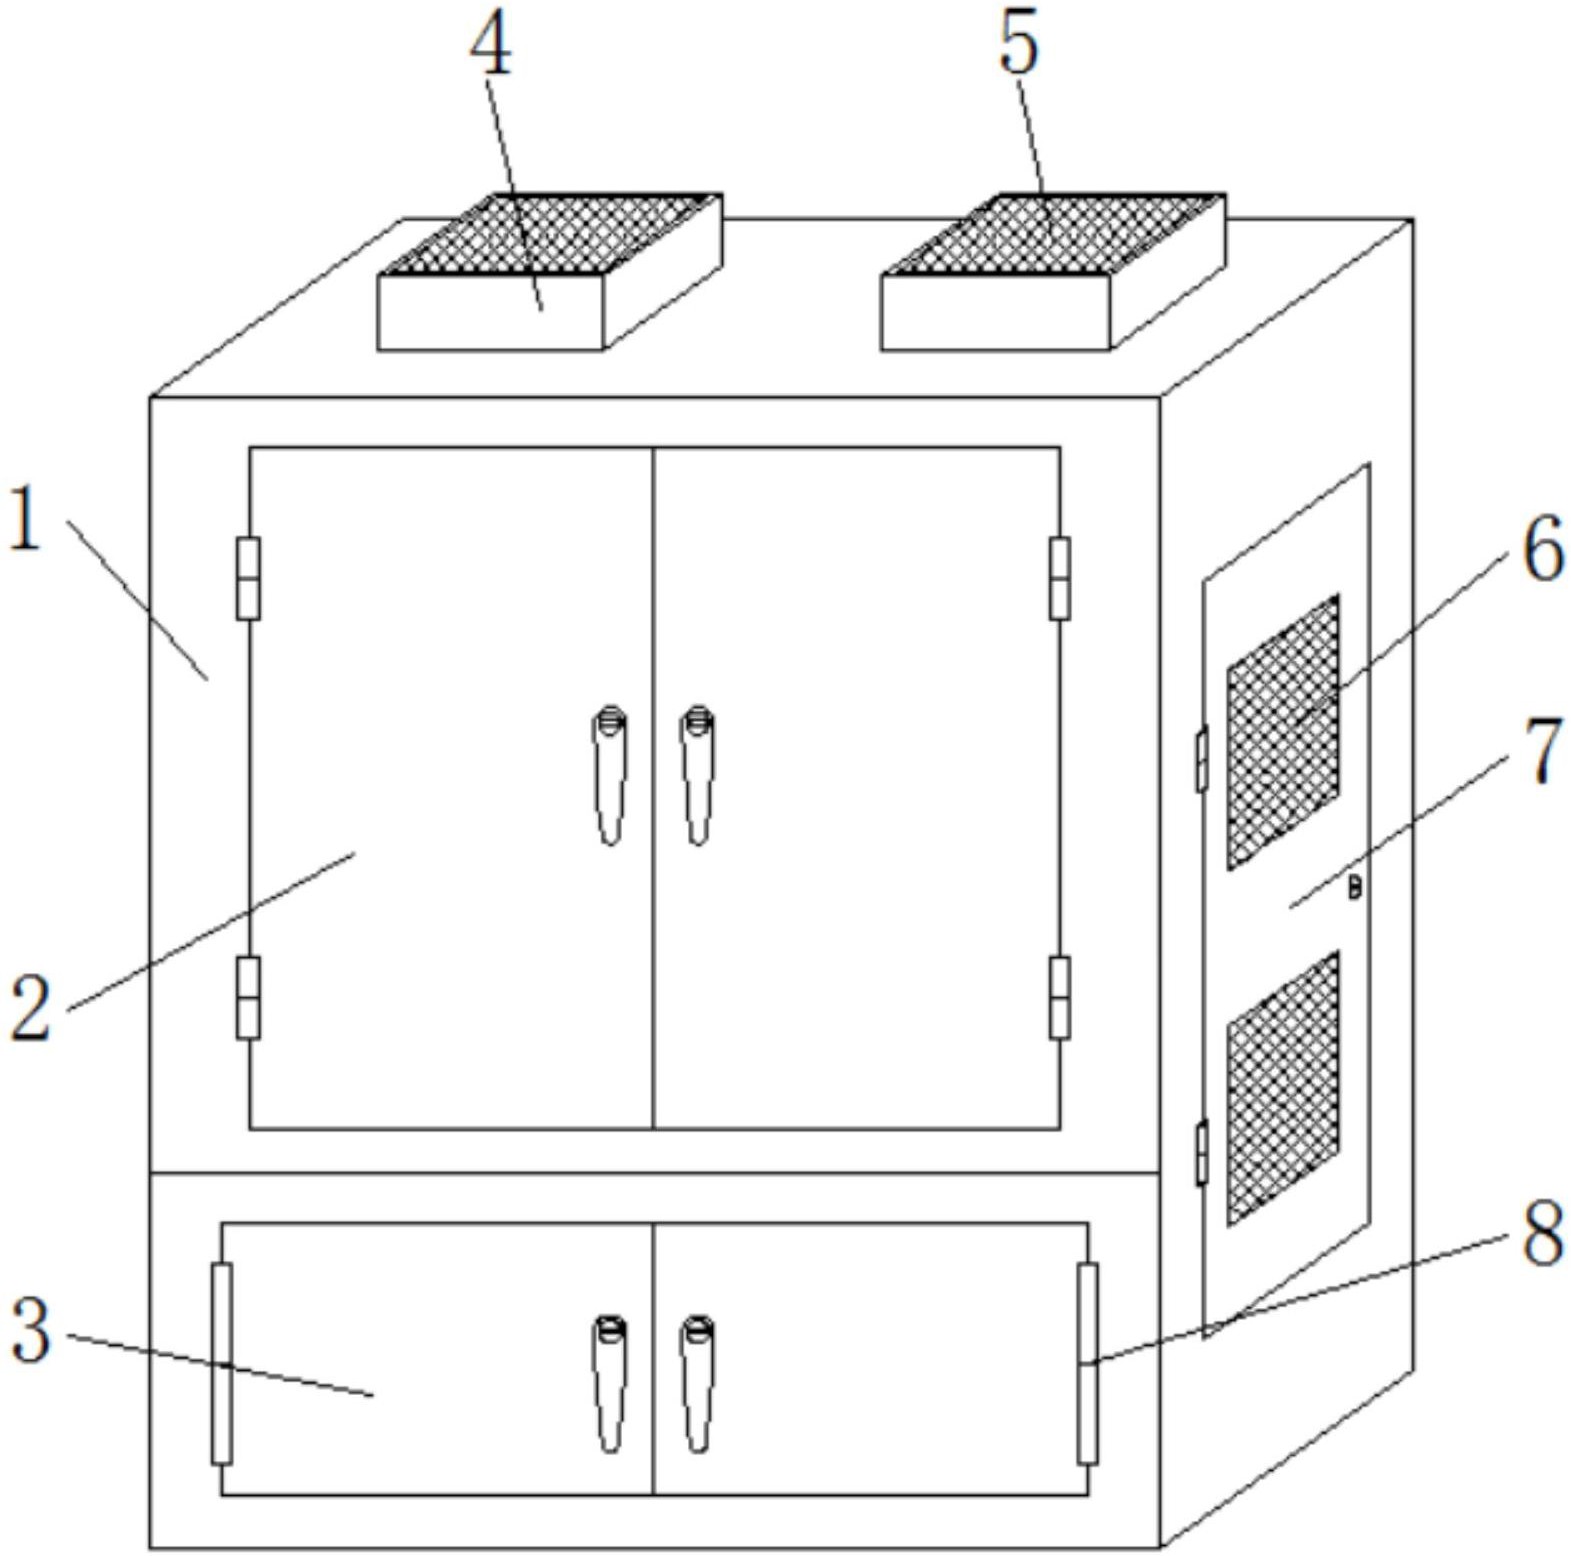 一种具有水冷功能的散热柜专利图